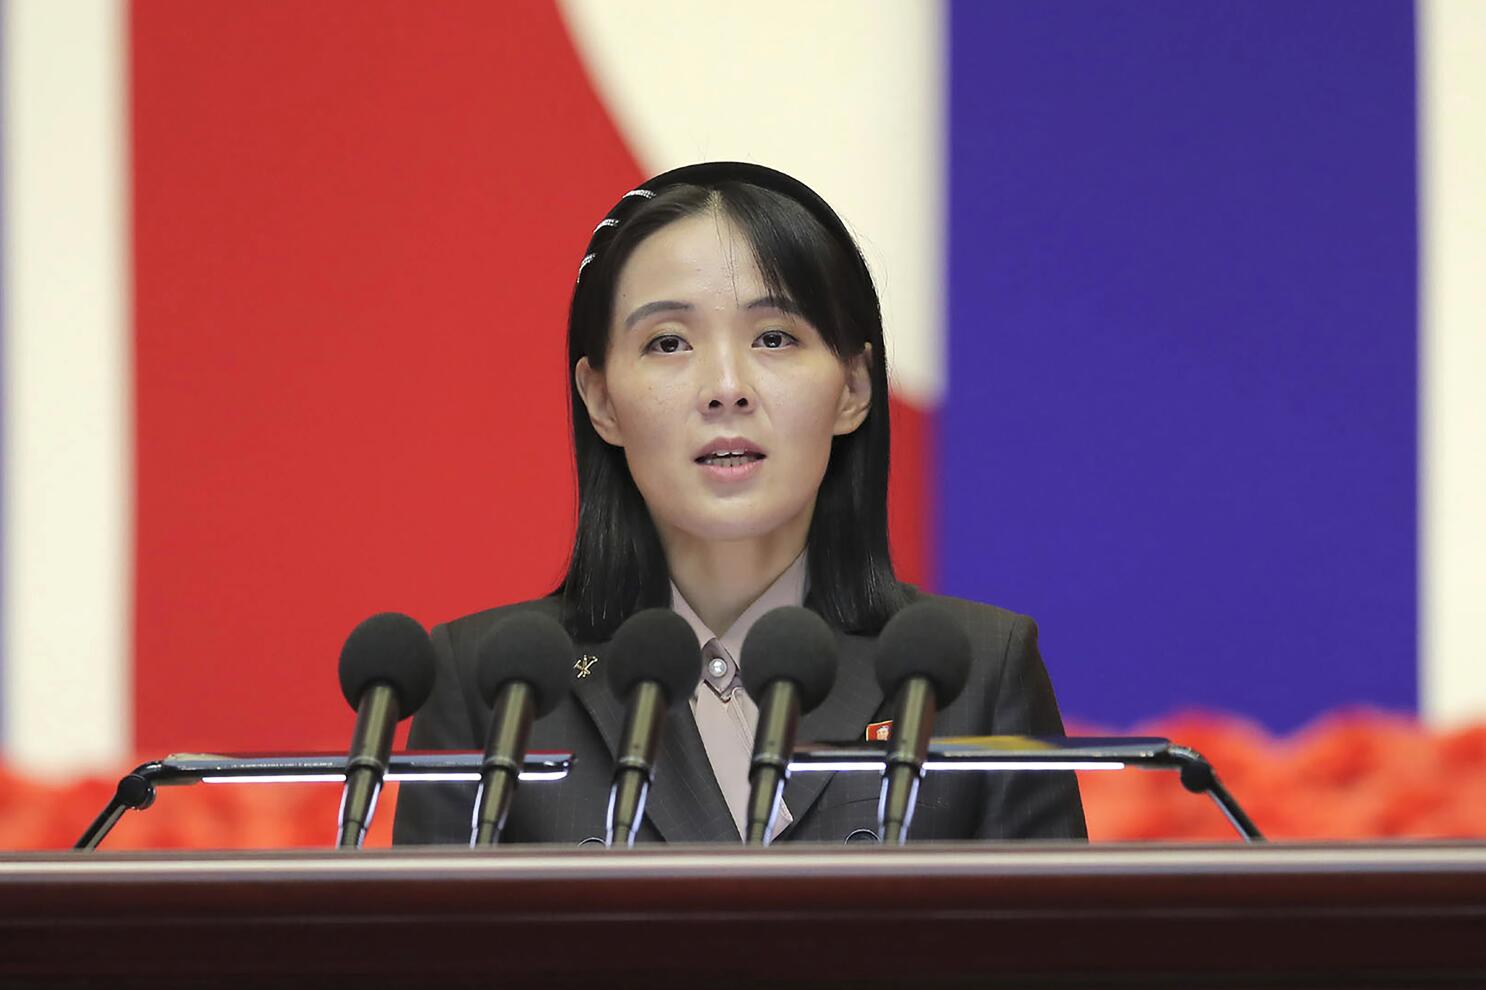 La hermana de Kim Jong-un critica el discurso de Año Nuevo del presidente surcoreano